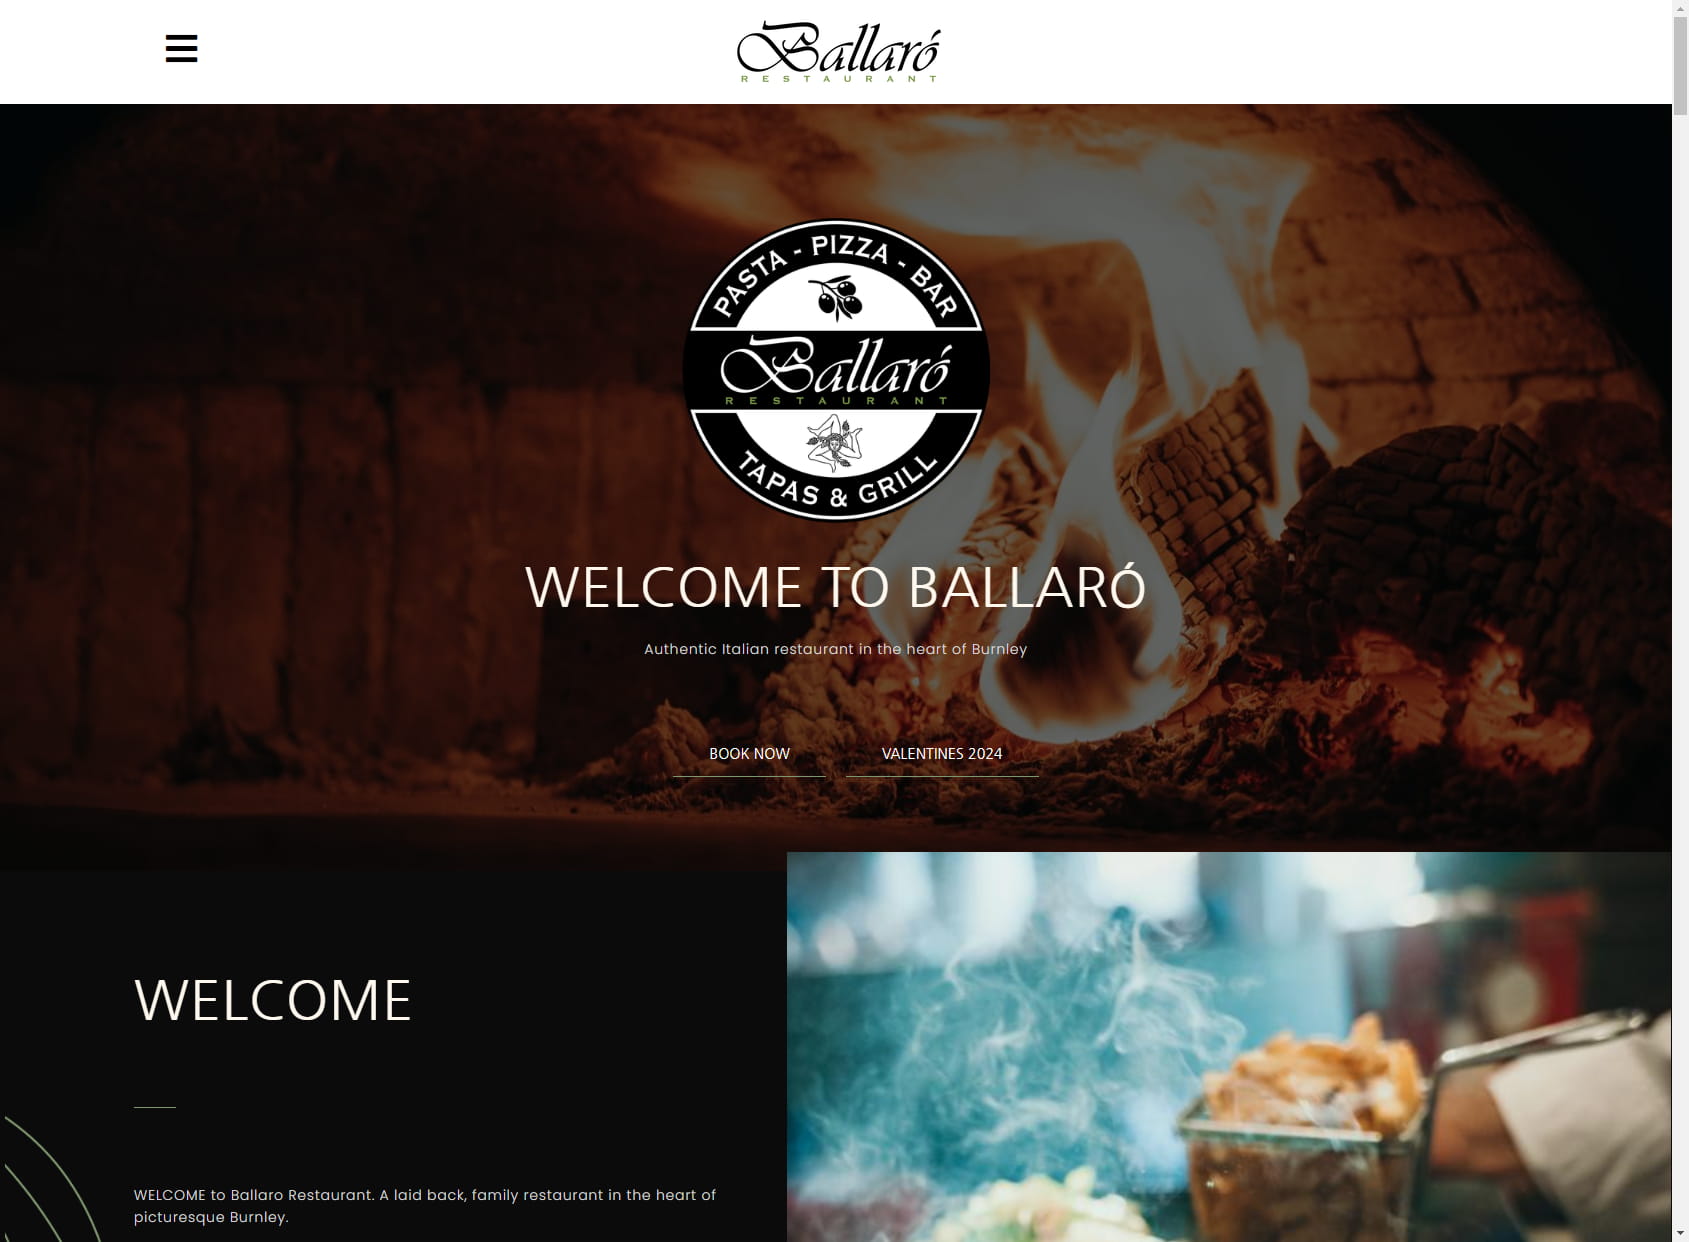 Ballaro' Restaurant